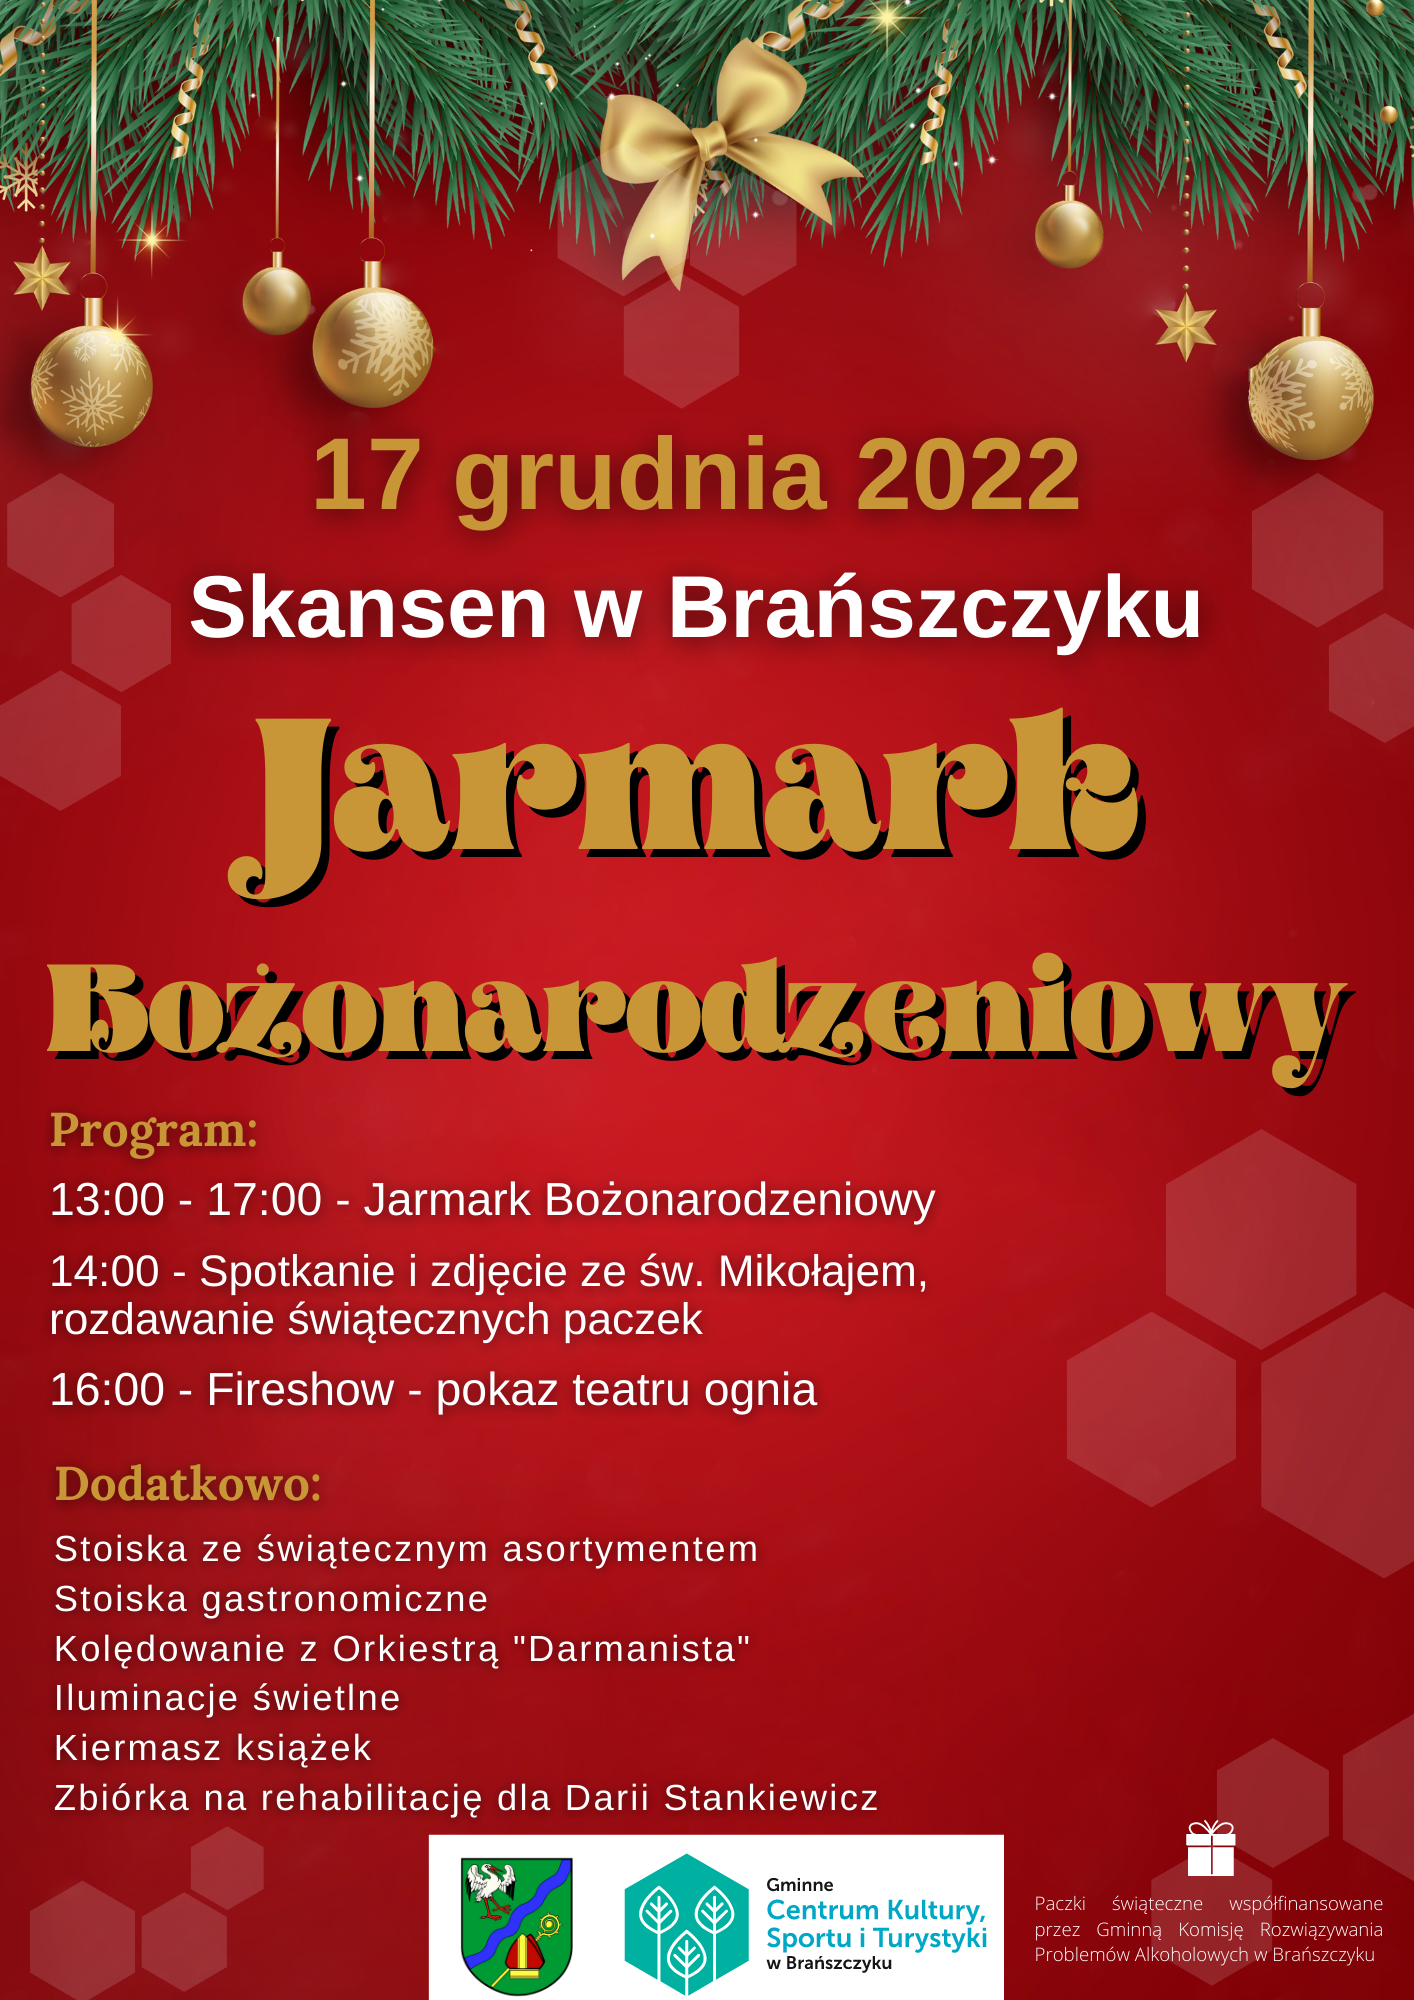 Plakat promujący Jarmark Bożonarodzeniowy w Skansenie w Brańszczyku. Na plakacie przedstawiono datę wydarzenia oraz program i dodatkowe atrakcje.